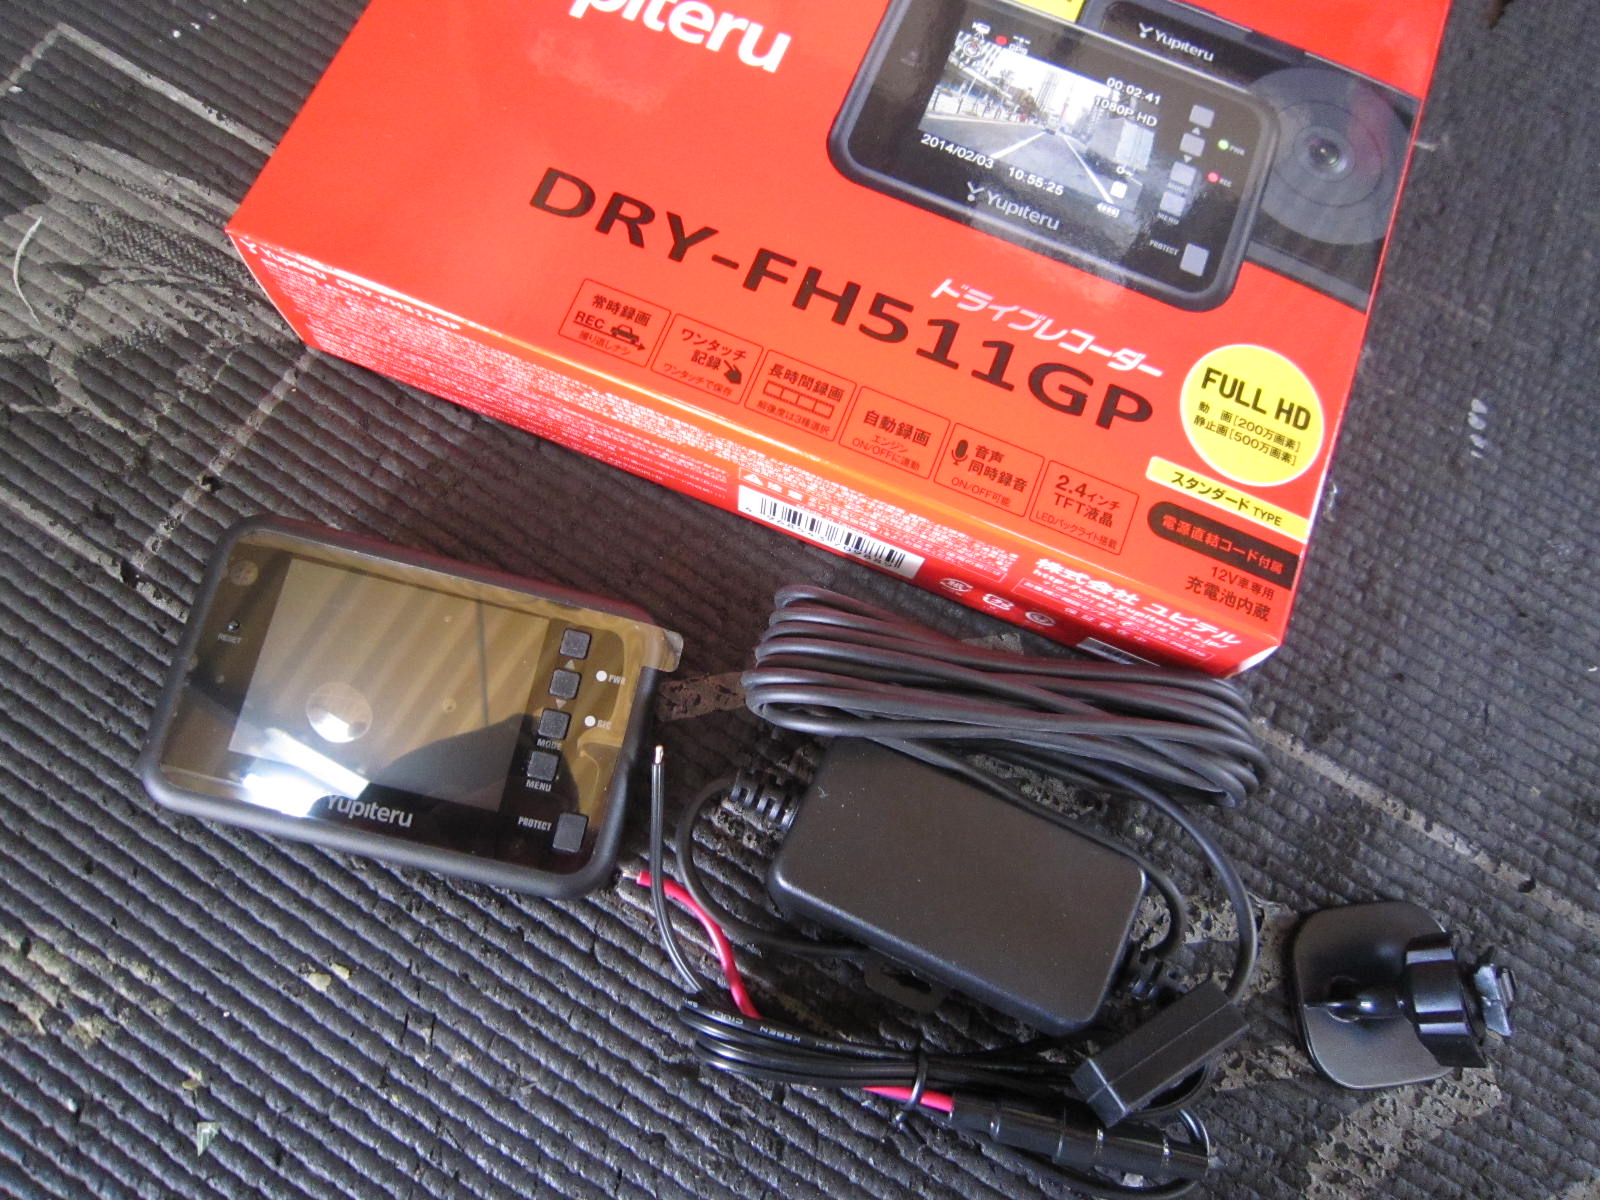 トヨタ プリウス １０系 ユピテル ドライブレコーダー DRY-FH511GP